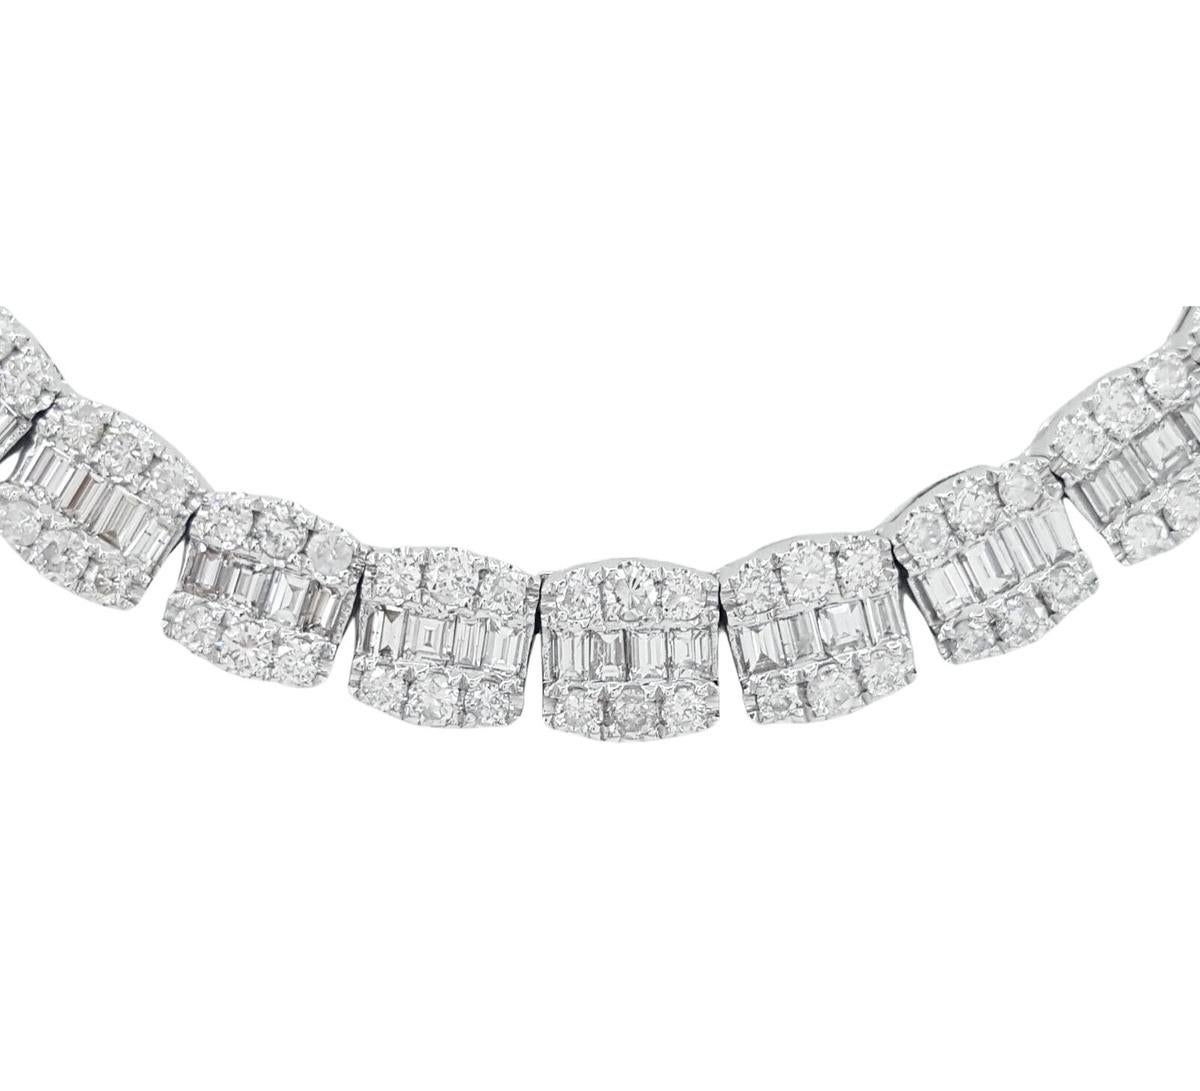 17 Karat Gesamtgewicht Diamanten im Brillant- und Baguetteschliff Halskette. 

Die Halskette wiegt 54,9 Gramm, ist 20